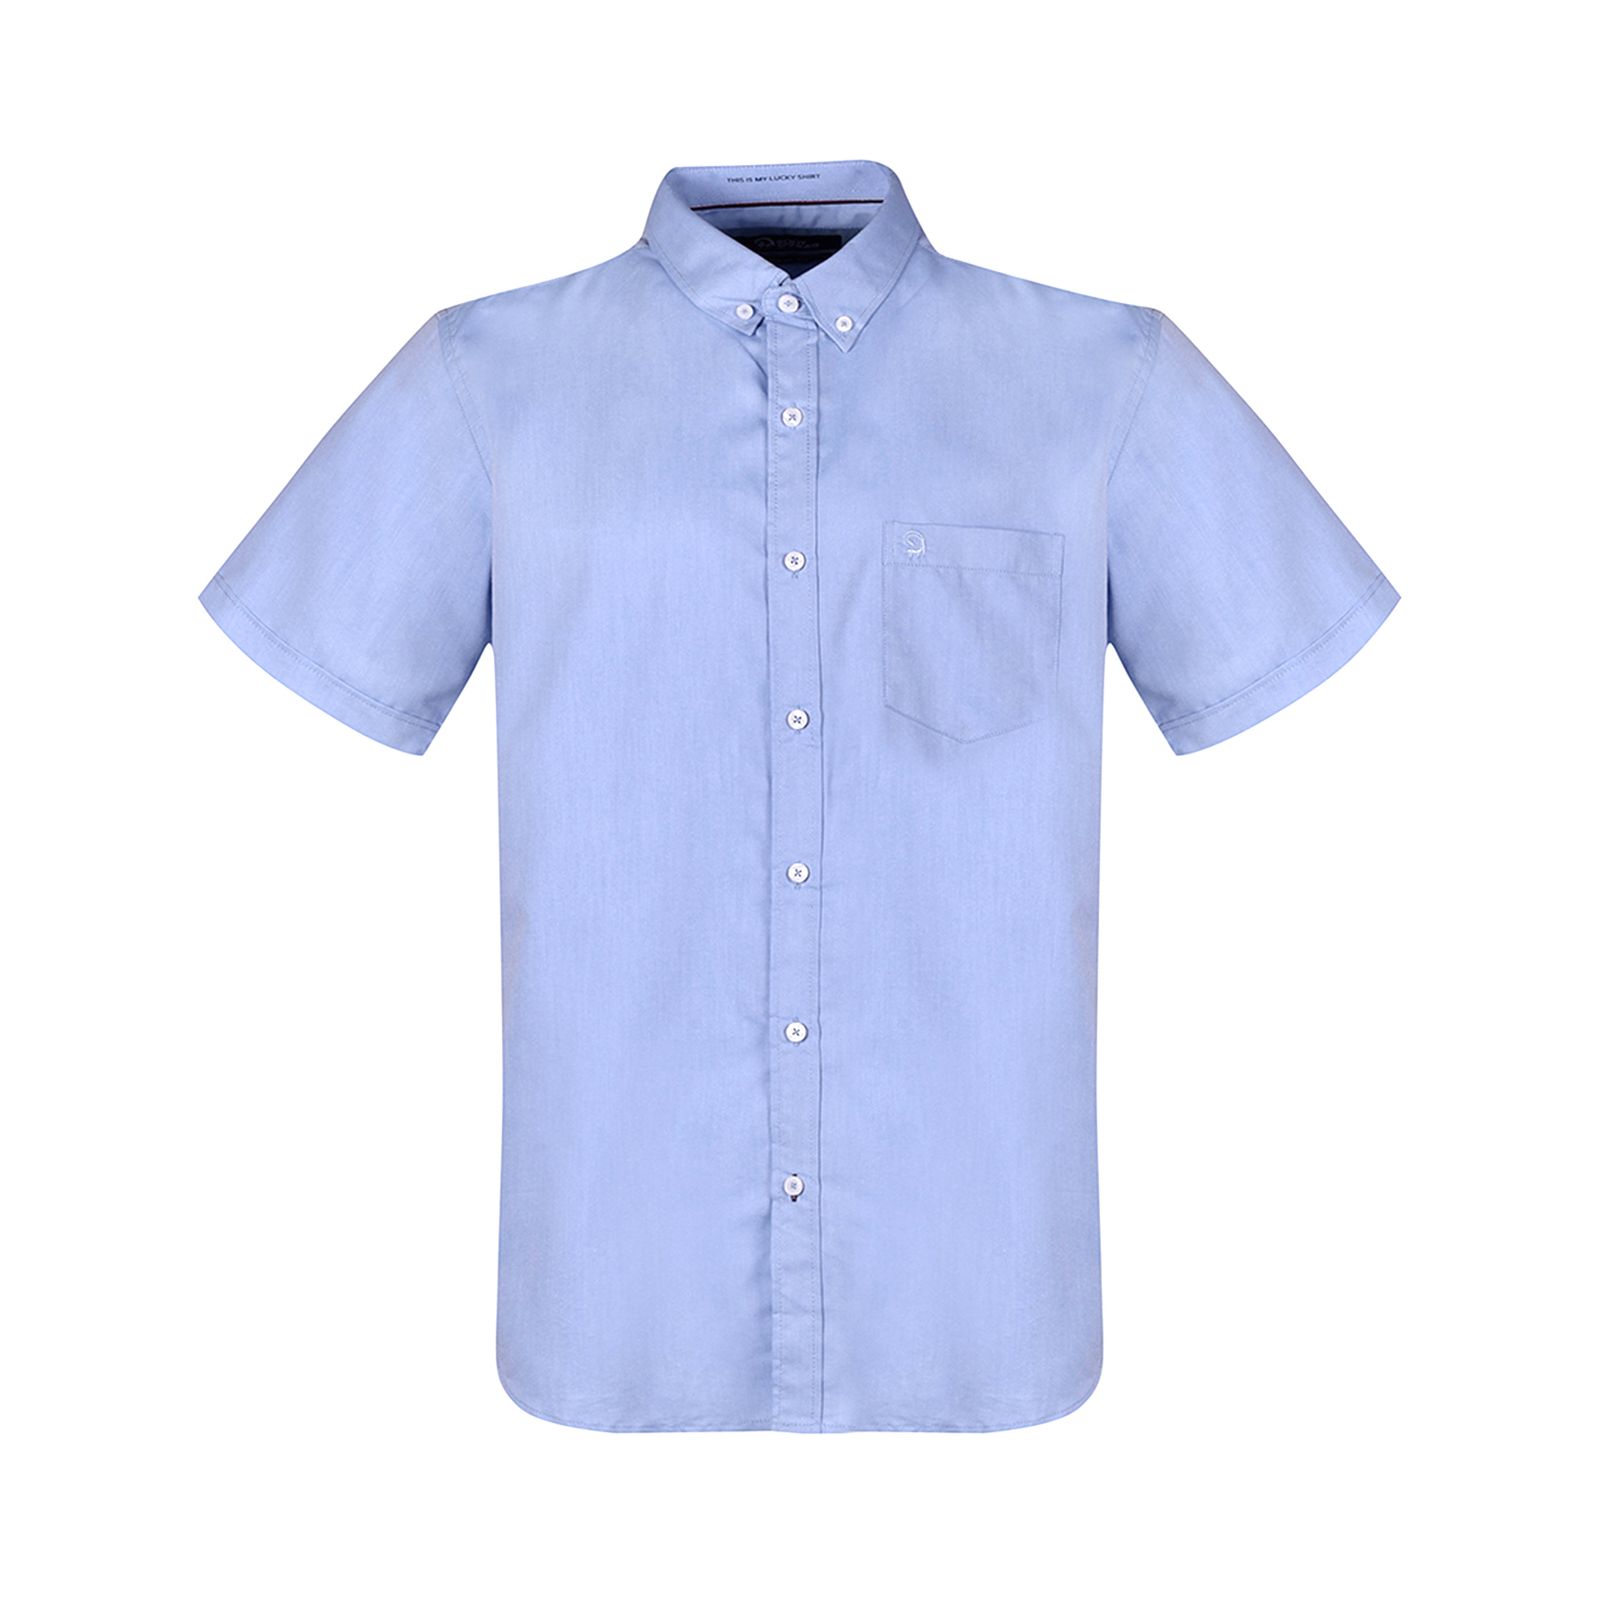 پیراهن آستین کوتاه مردانه بادی اسپینر مدل 1106 کد 2 رنگ آبی -  - 1